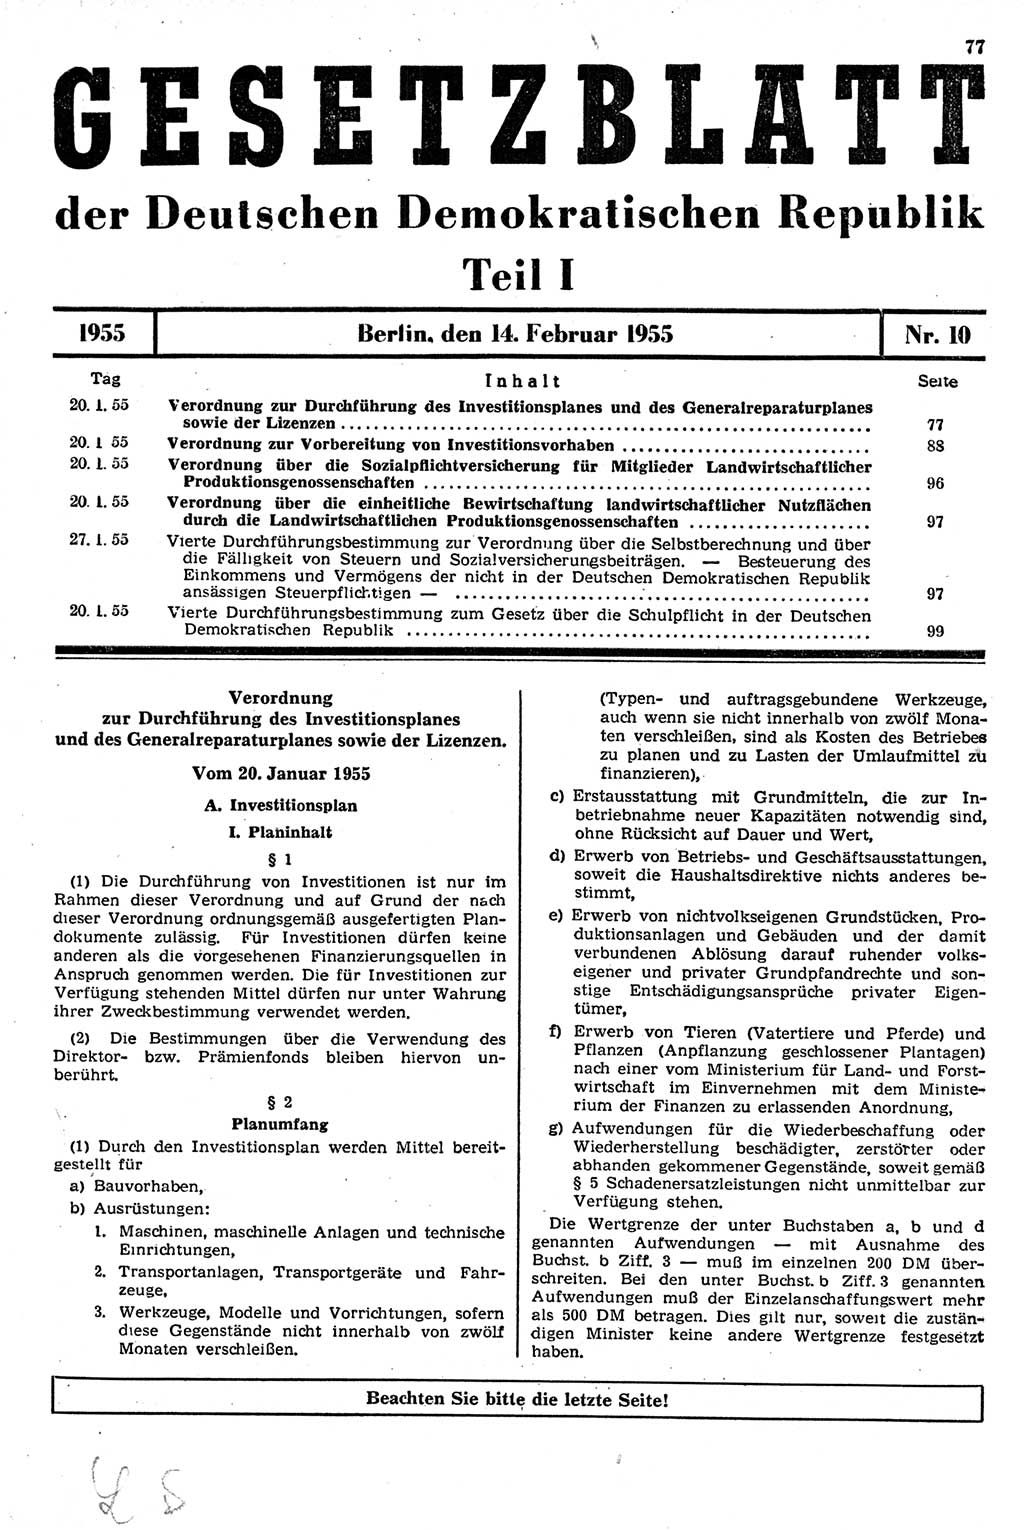 Gesetzblatt (GBl.) der Deutschen Demokratischen Republik (DDR) Teil Ⅰ 1955, Seite 77 (GBl. DDR Ⅰ 1955, S. 77)